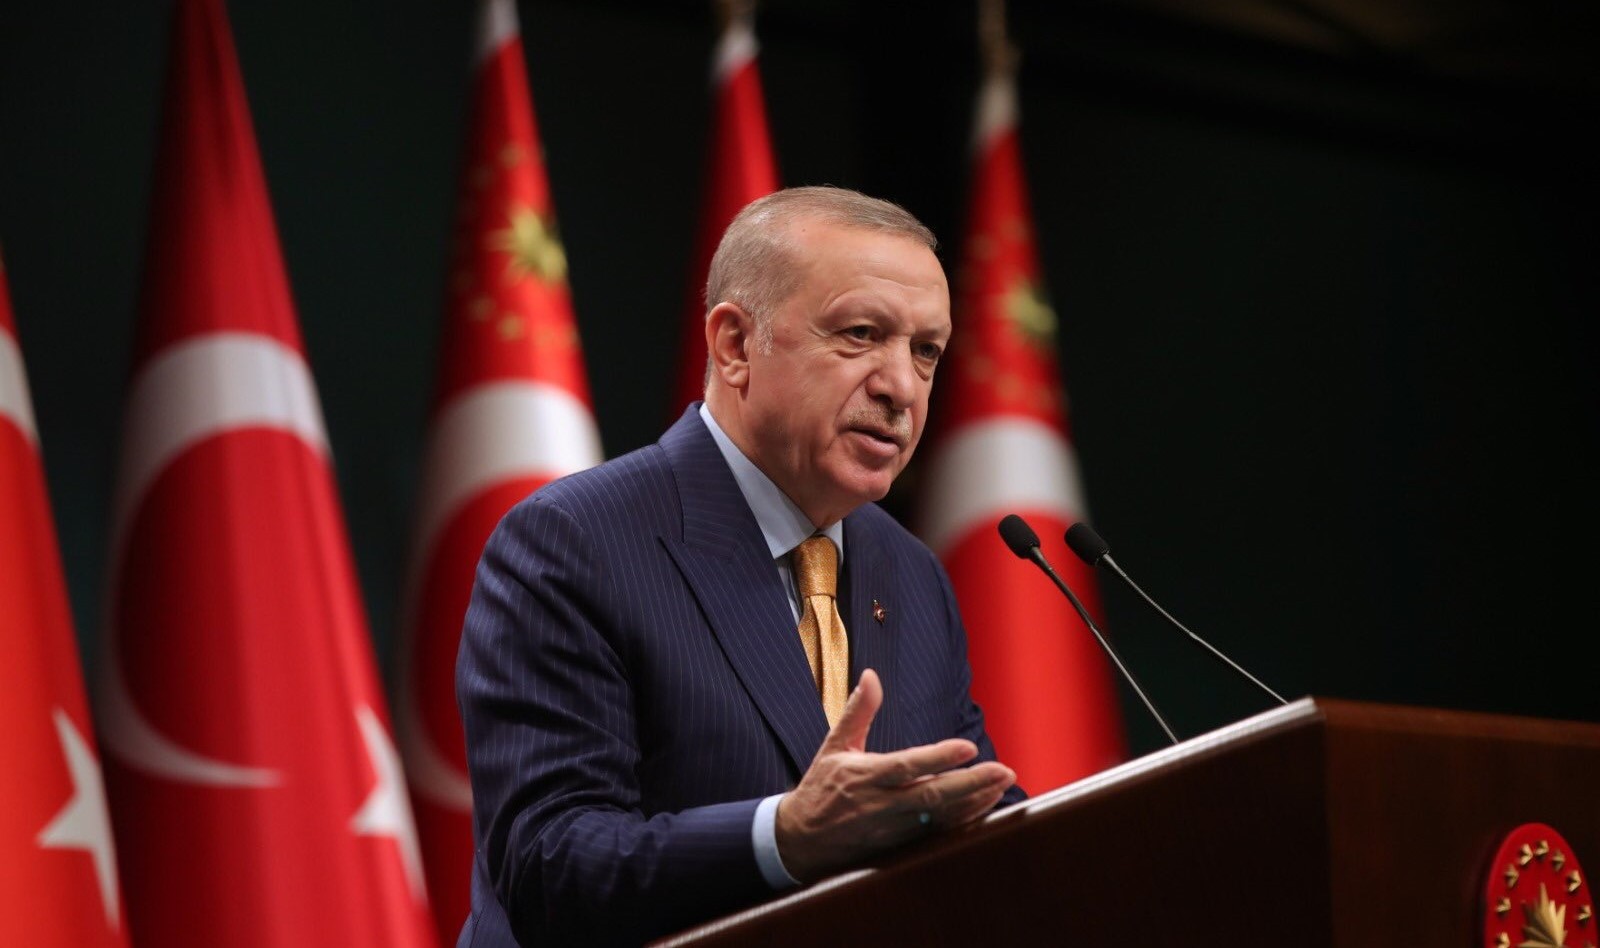 Erdogan: Naredne godine u ovo doba ćemo imati znatno drugačiju fotografiju Turske